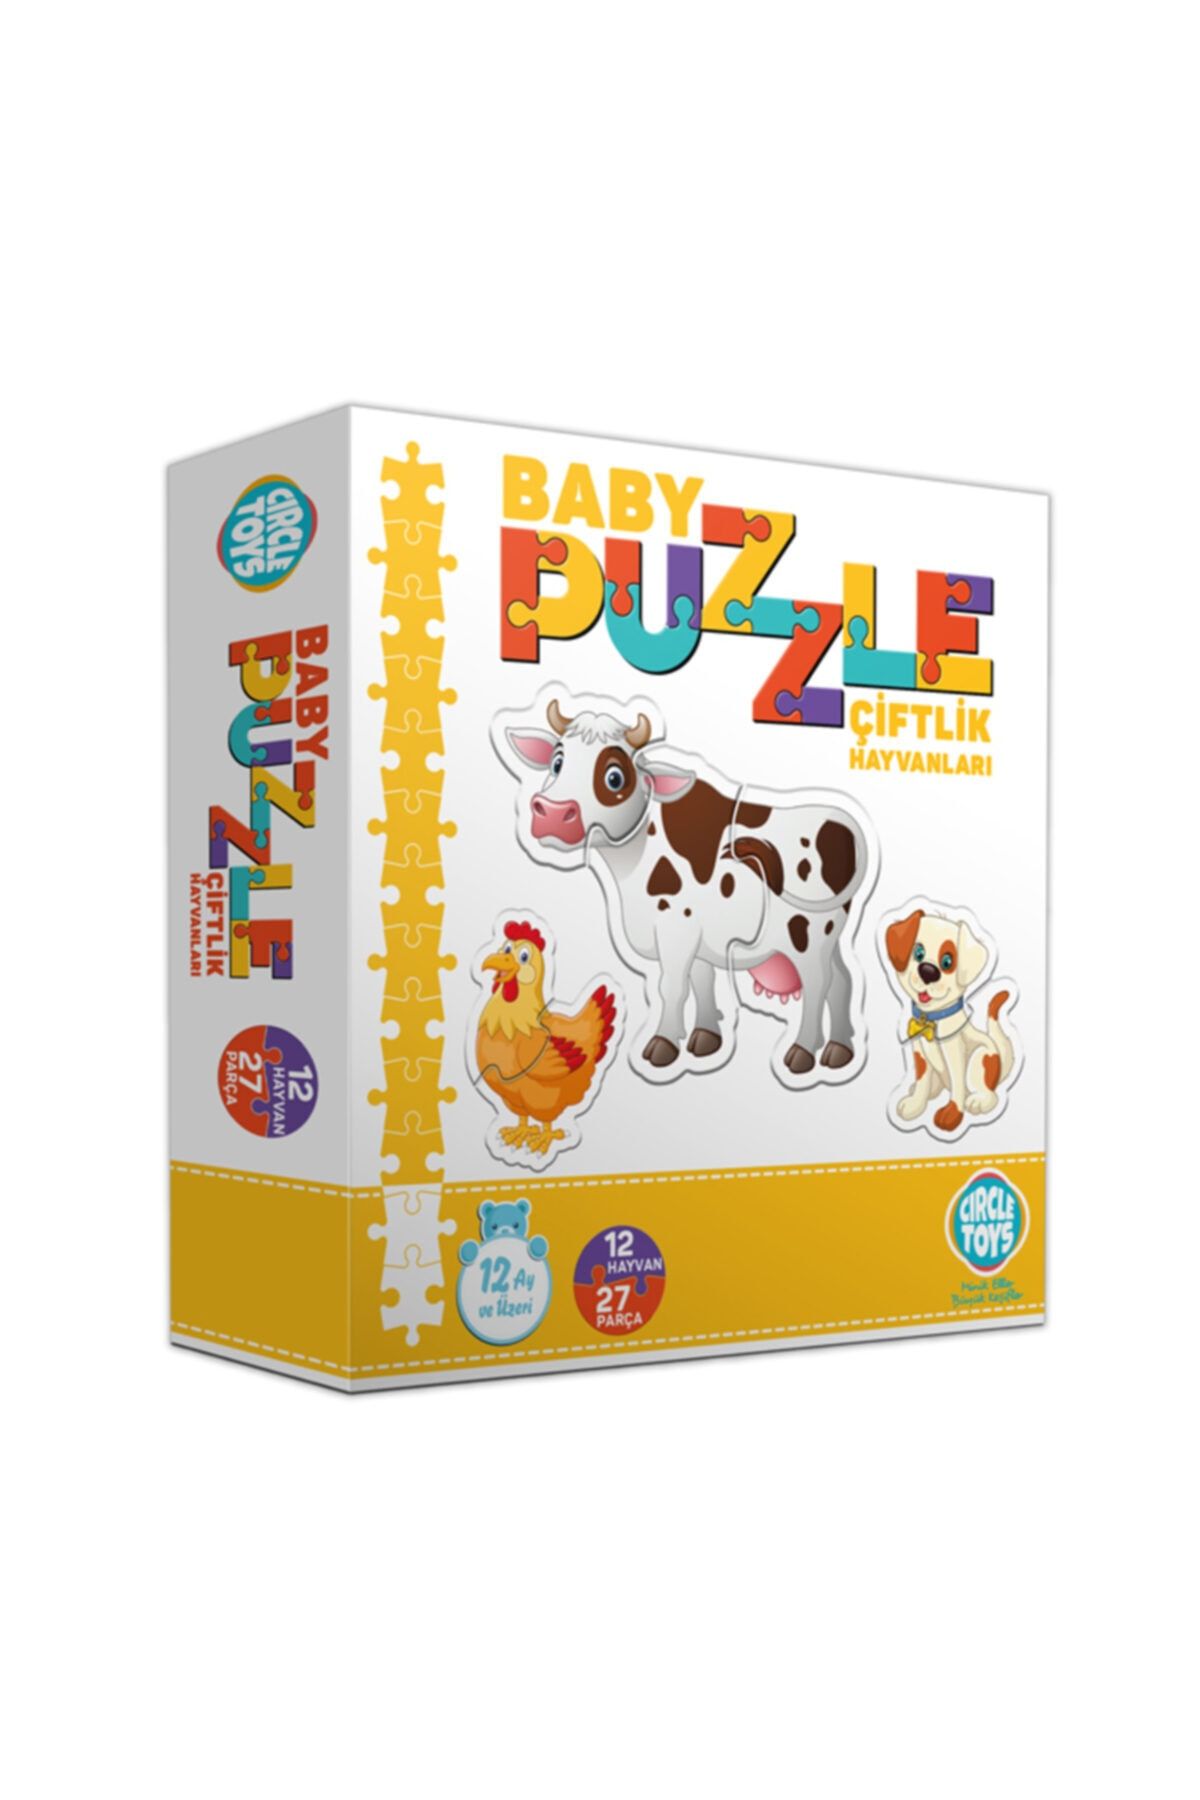 Circle Toys Özlem Toys Baby Puzzle Çiftlik Hayvanları Algılama Koordinasyon Becerisi